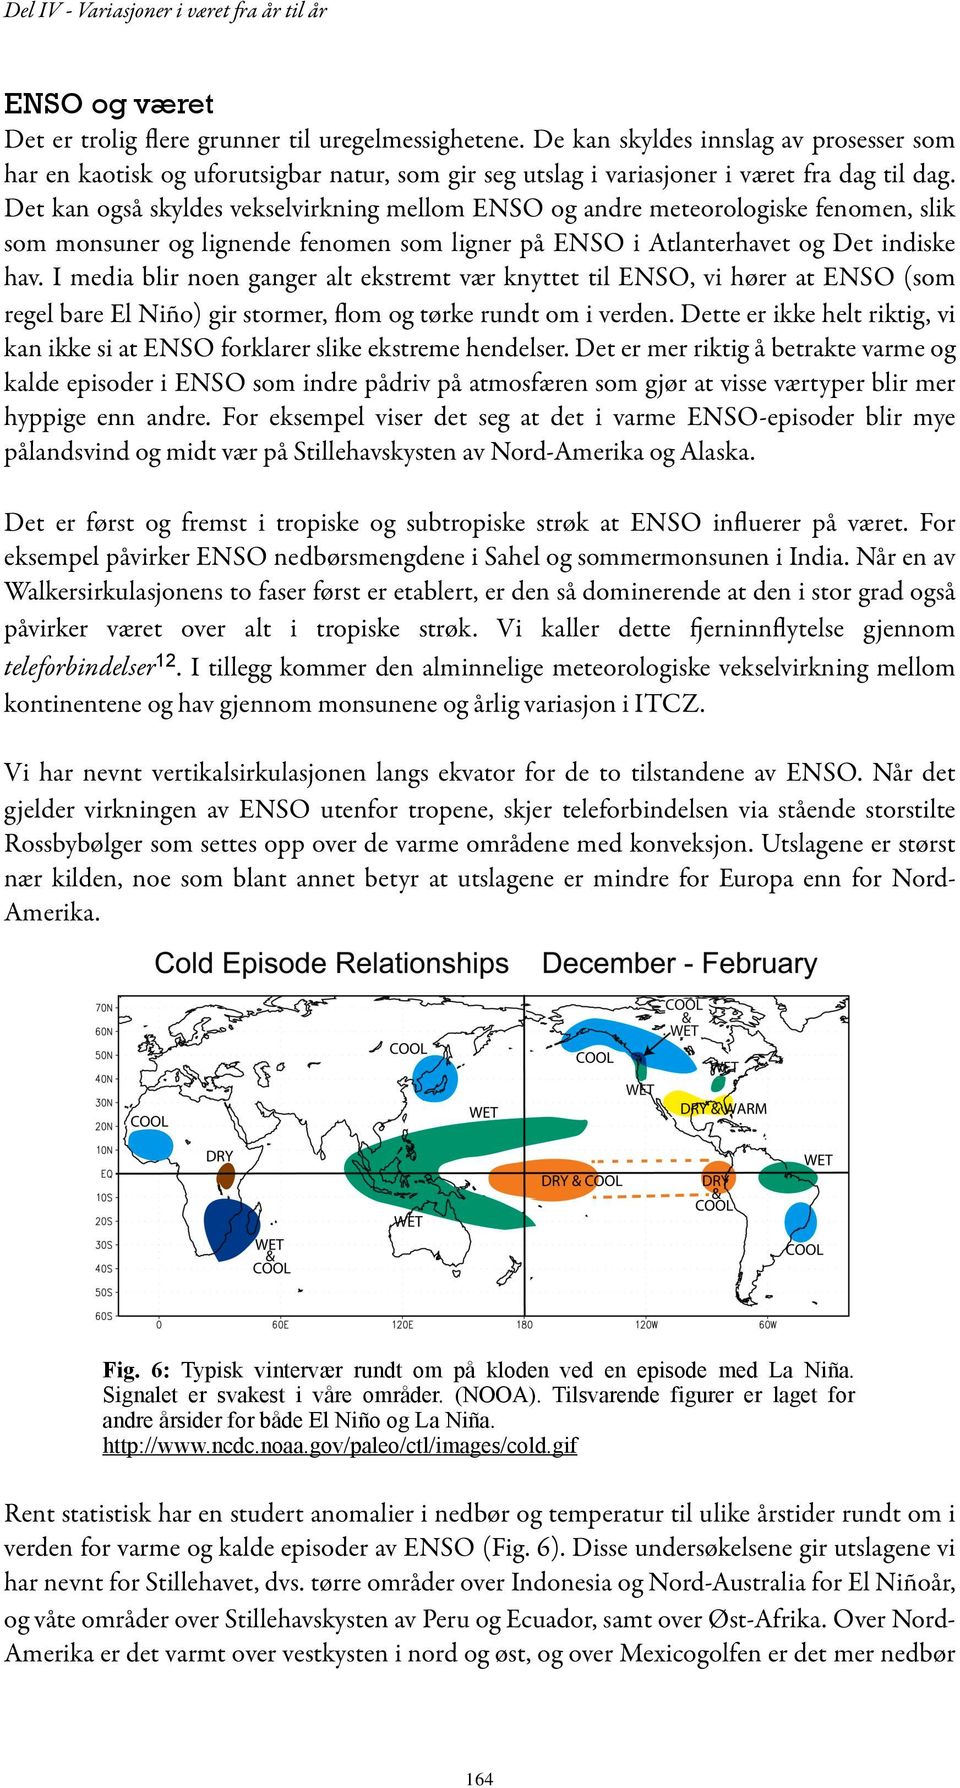 Det kan også skyldes vekselvirkning mellom ENSO og andre meteorologiske fenomen, slik som monsuner og lignende fenomen som ligner på ENSO i Atlanterhavet og Det indiske hav.